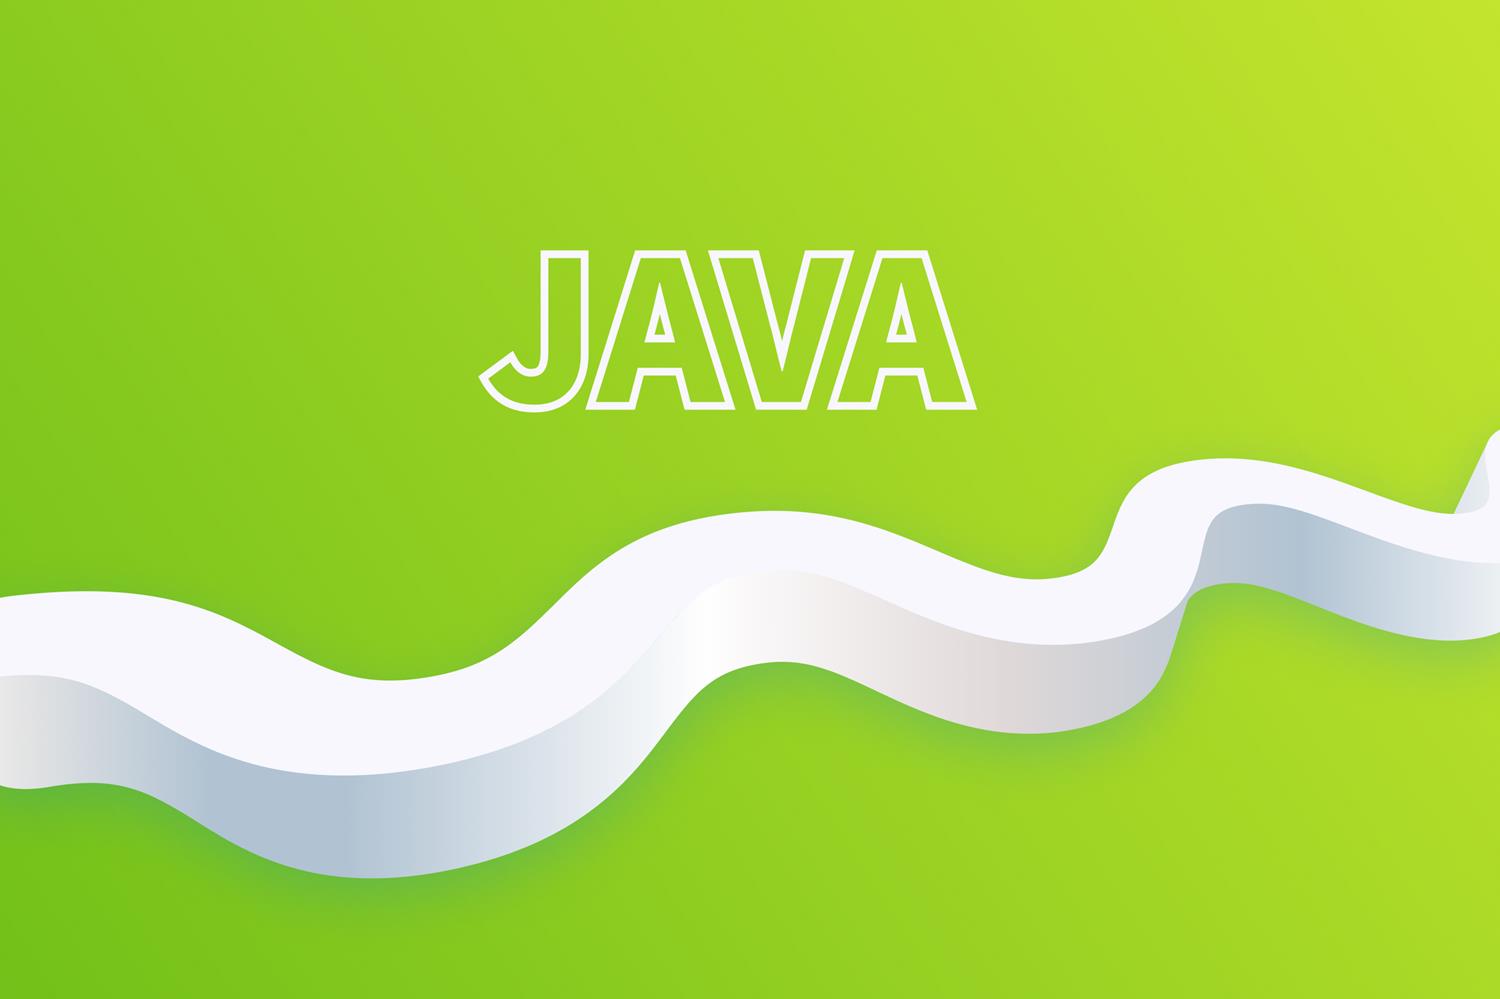 Путь от джуна до хорошего Java-разработчика: roadmap для начинающих